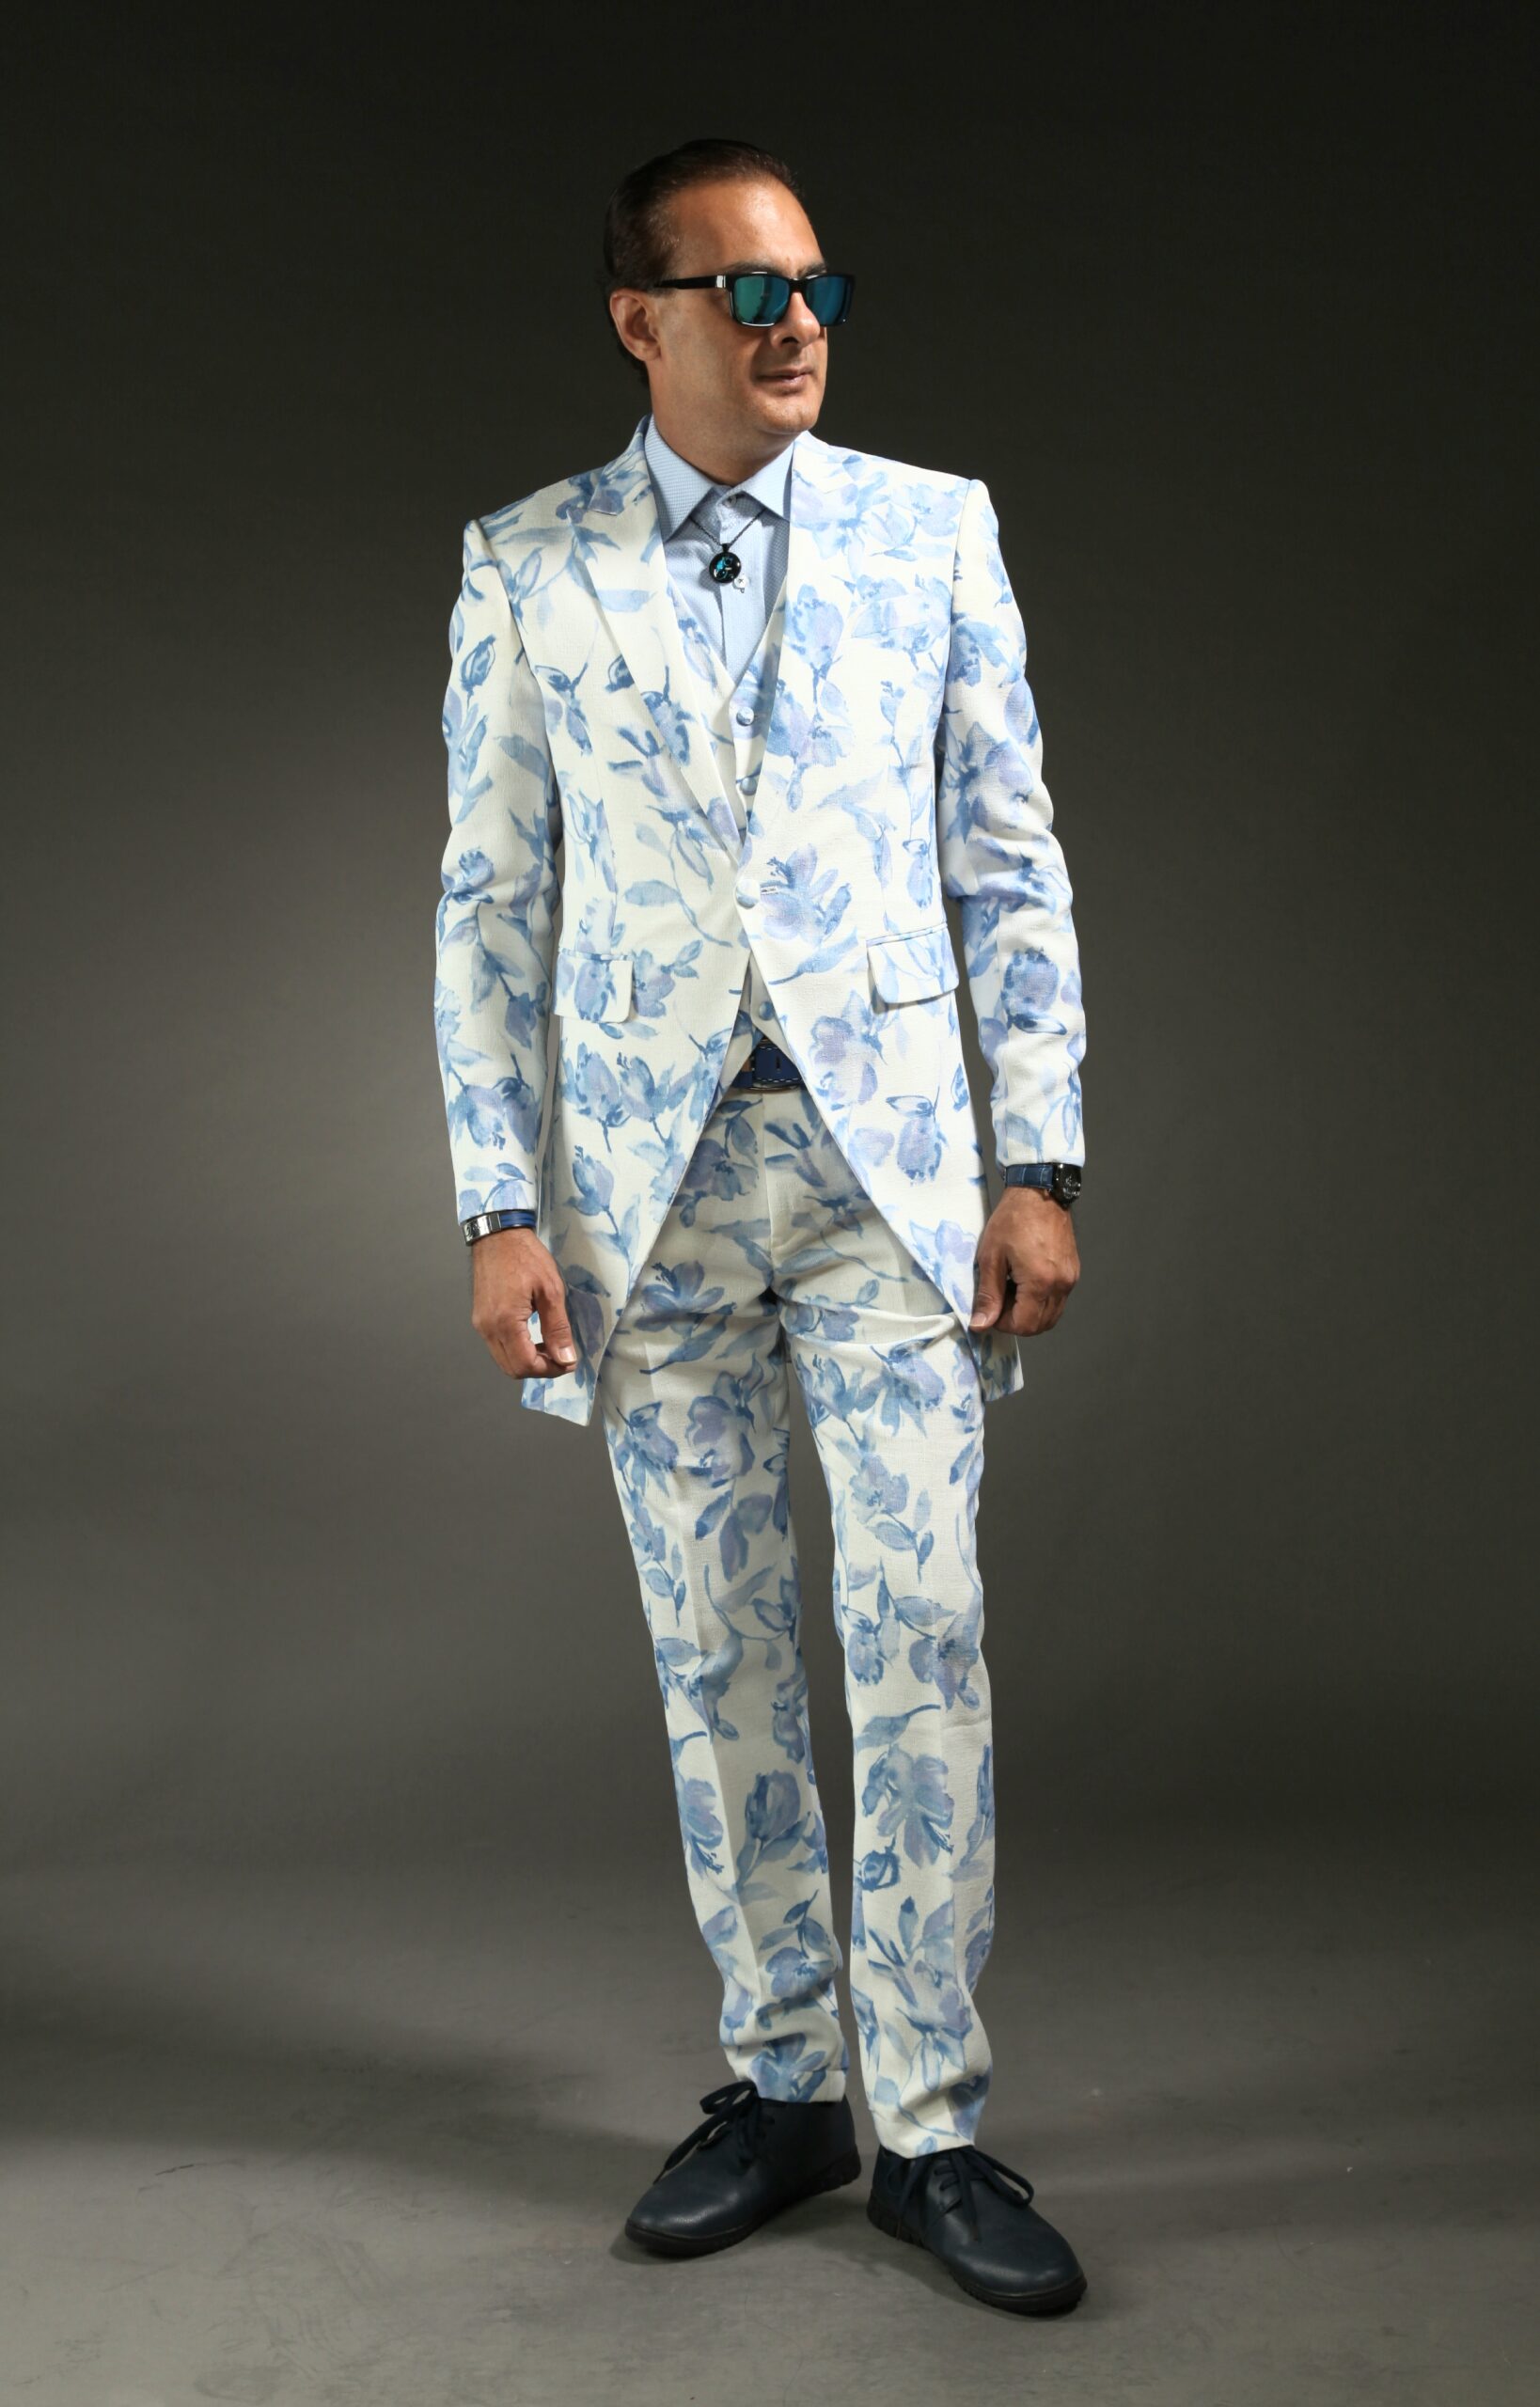 Mst 5013 01 Rent Rental Hire Tuxedo Suit Black Tie Suit Designer Suits Shop Tailor Tailors Singapore Wedding